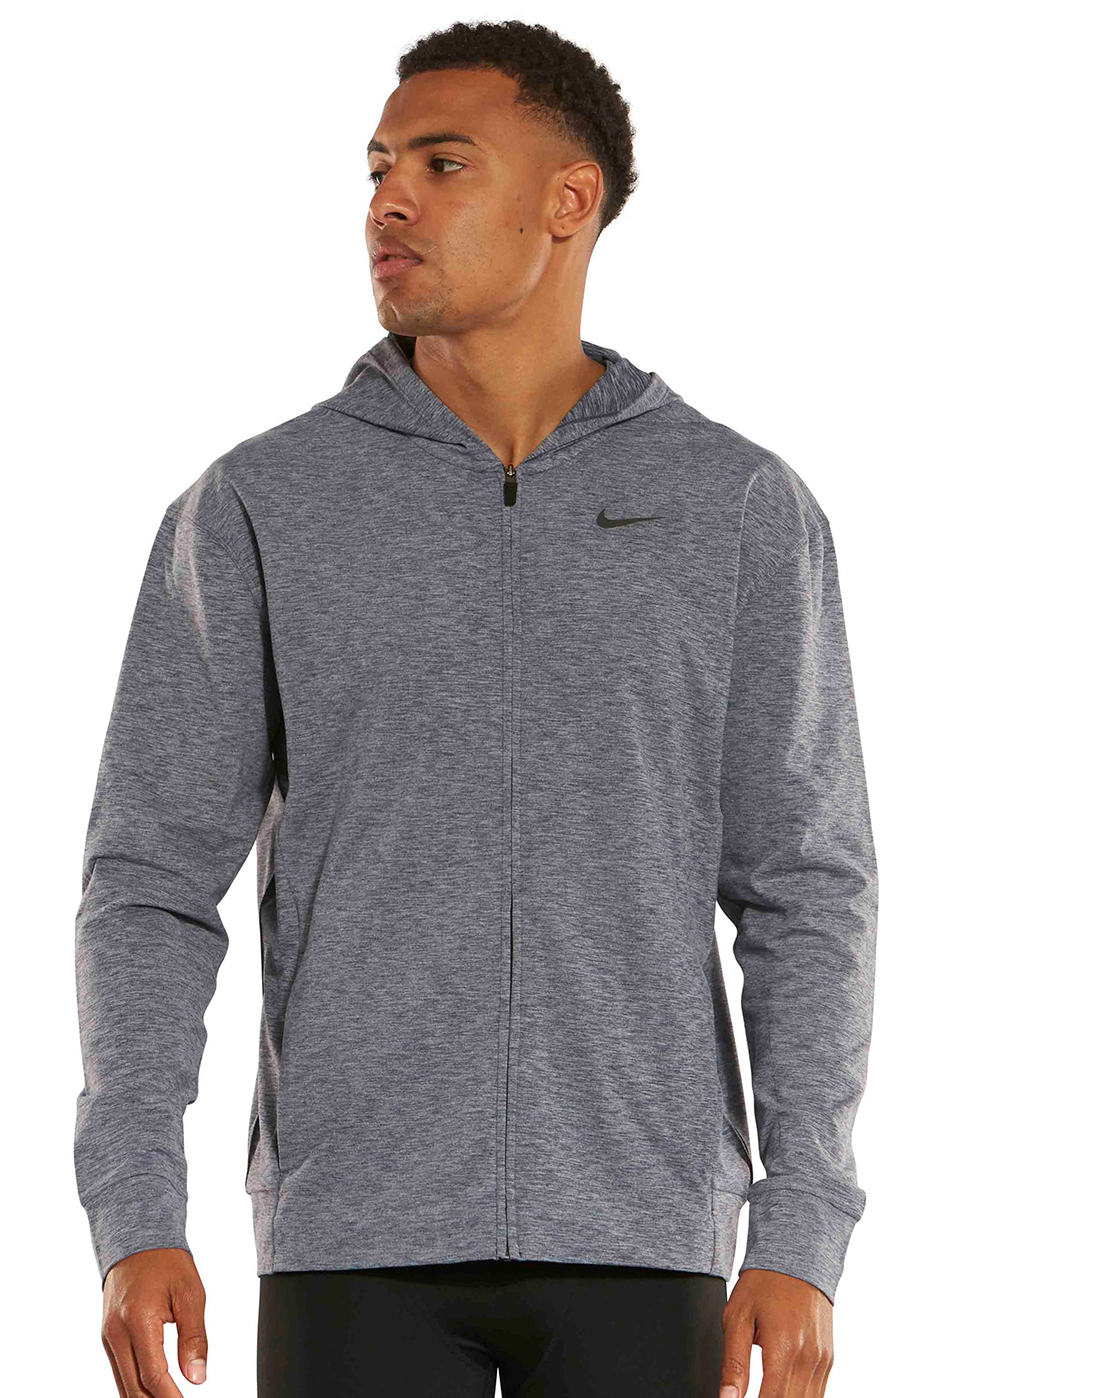 Men's Navy Nike Dry Full Zip Hoodie | Life Style Sports